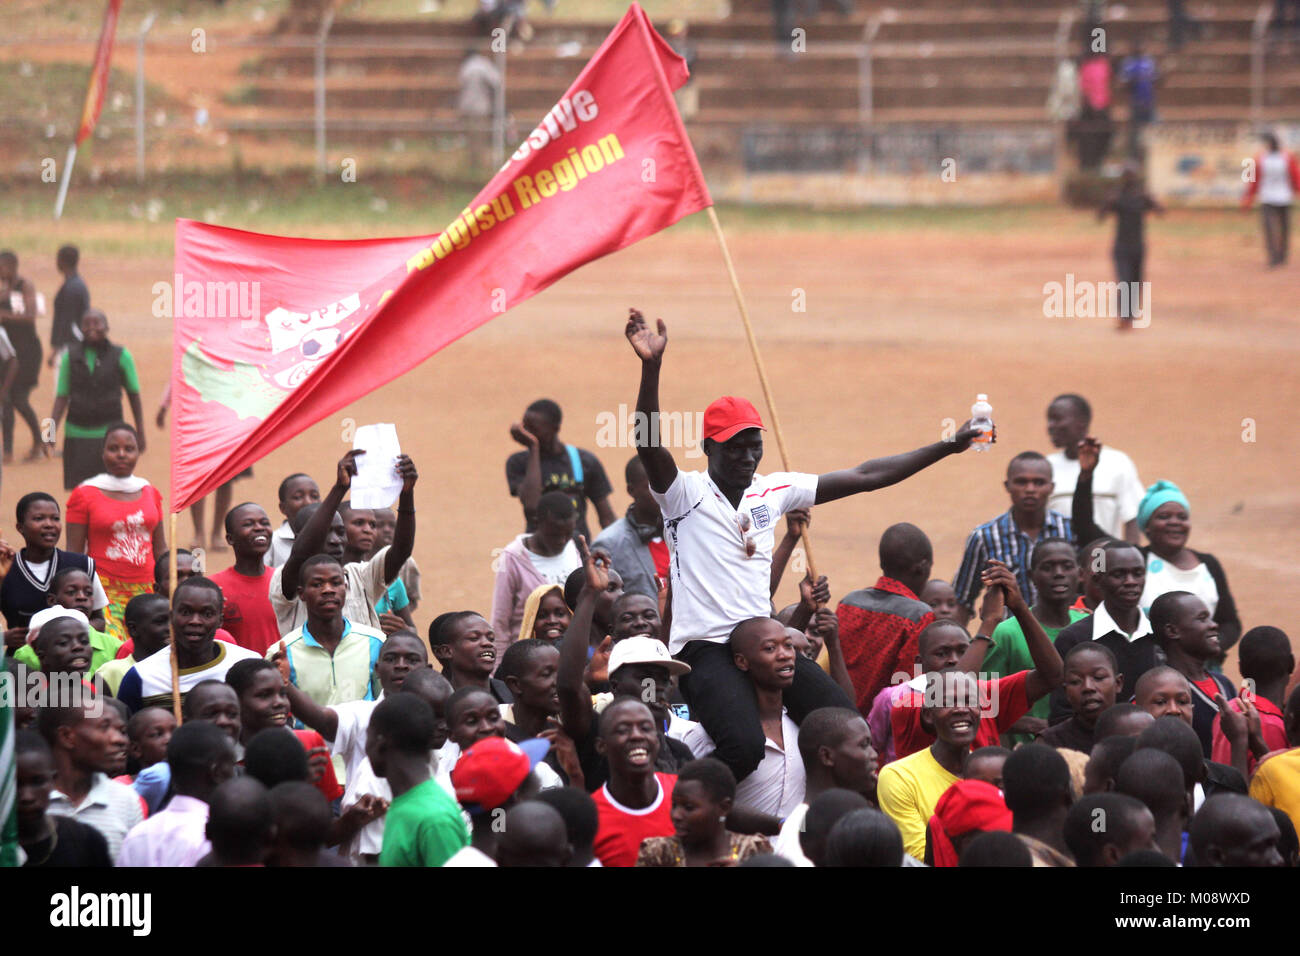 Une équipe de soccer de l'Ougandais jubilate joueurs jusqu'à la victoire Banque D'Images